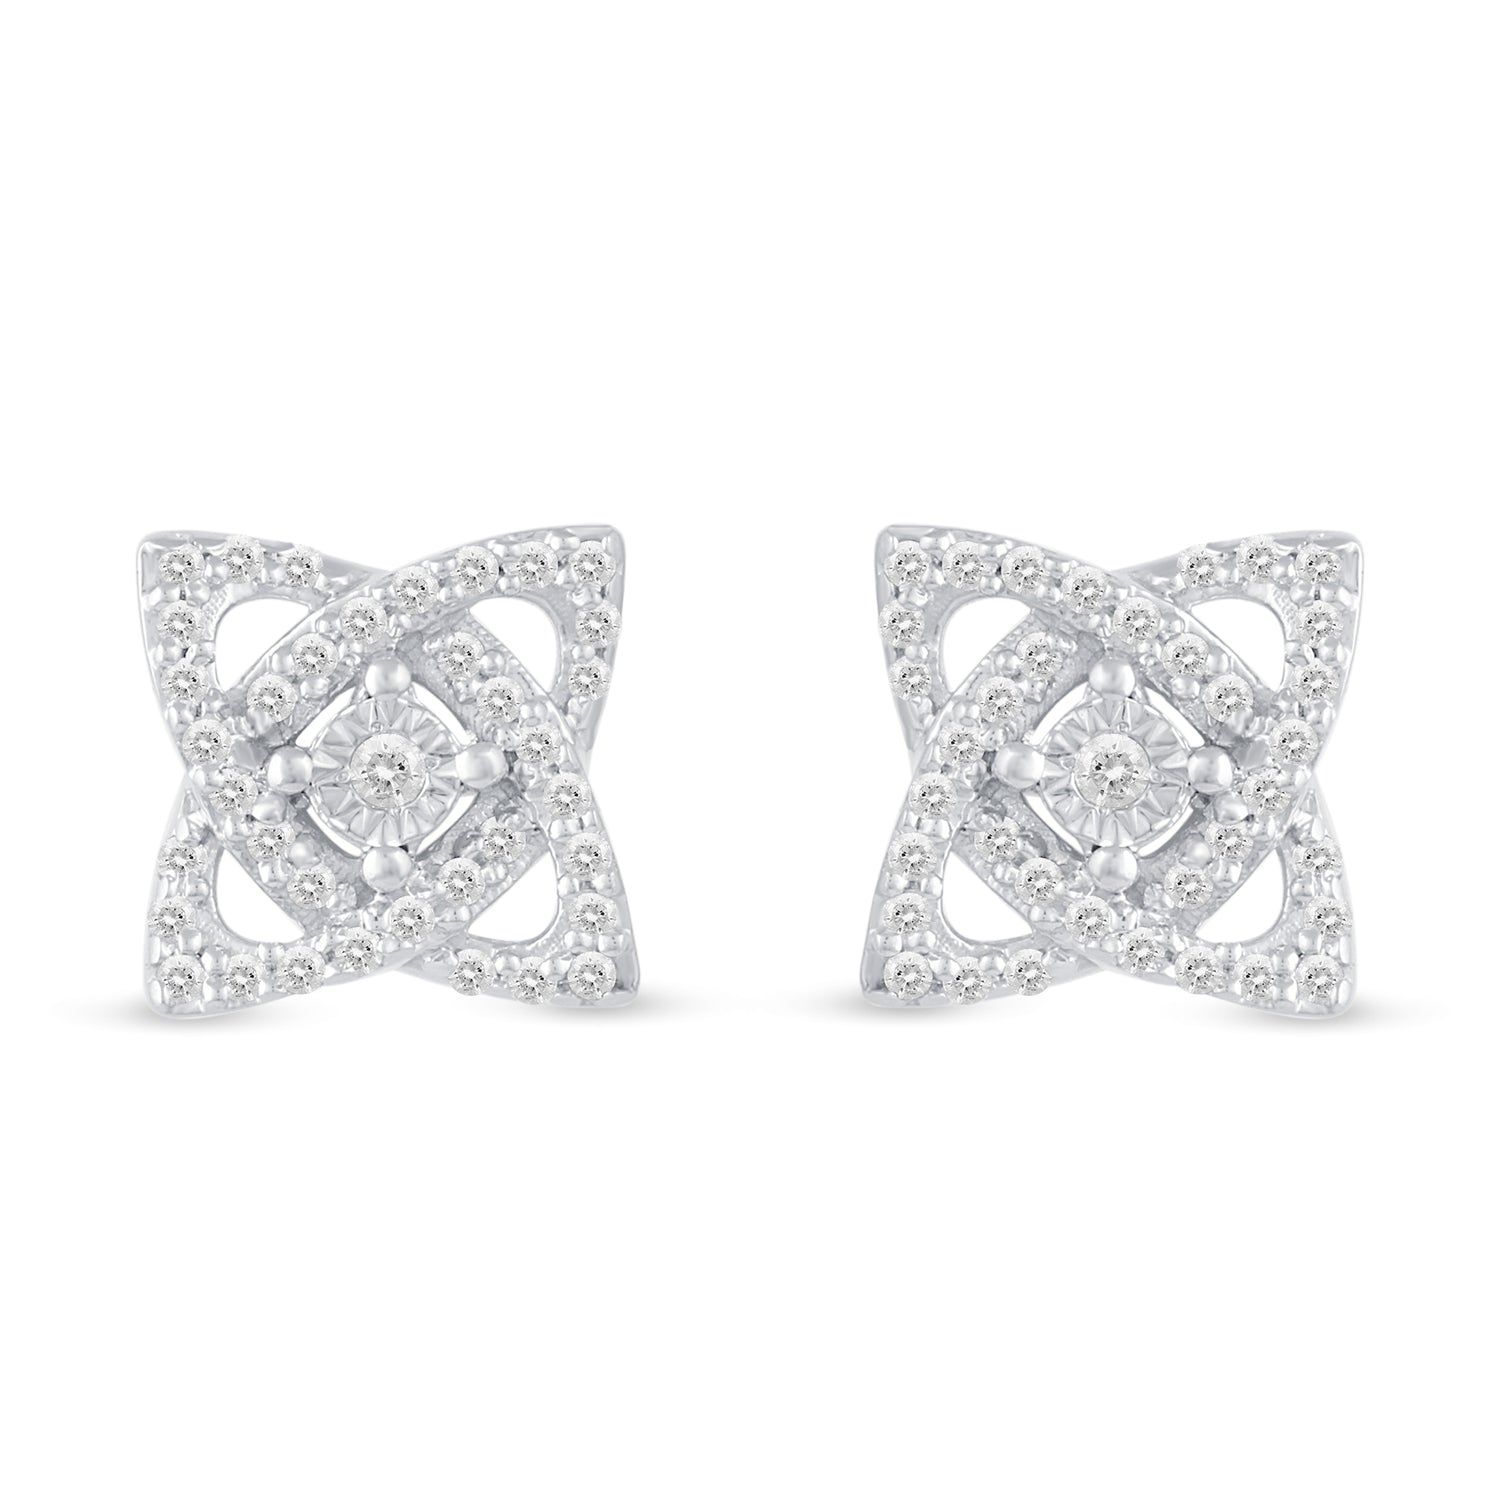 Set of 2 : 1/3 CT TW Diamond Open Petal Flower Pendant & Earrings in 925 Sterling Silver